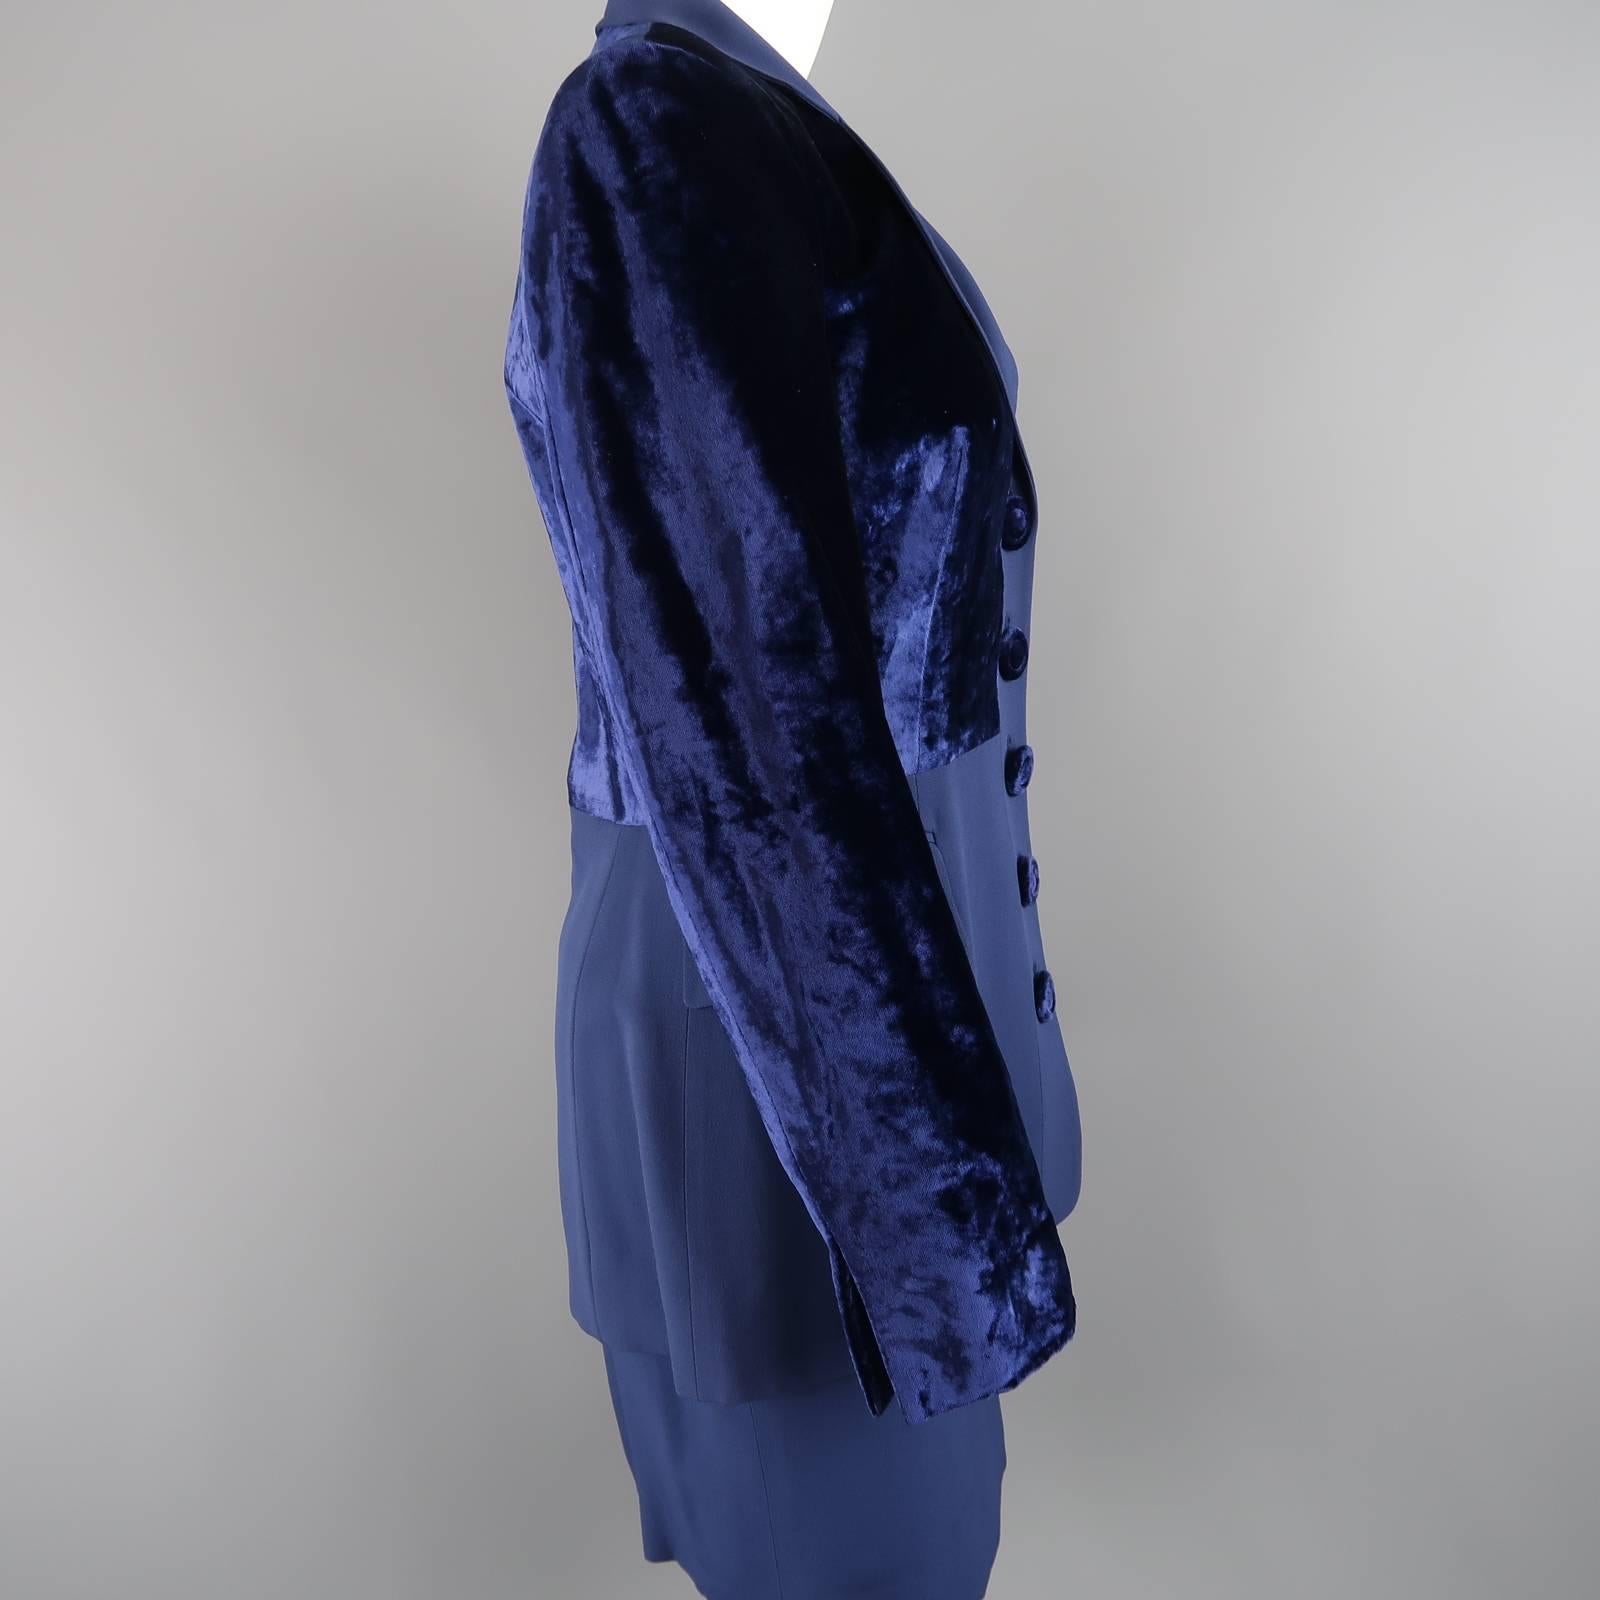 GIANFRANCO FERRE Size 8 Blue Velvet Panel Skirt Suit 1